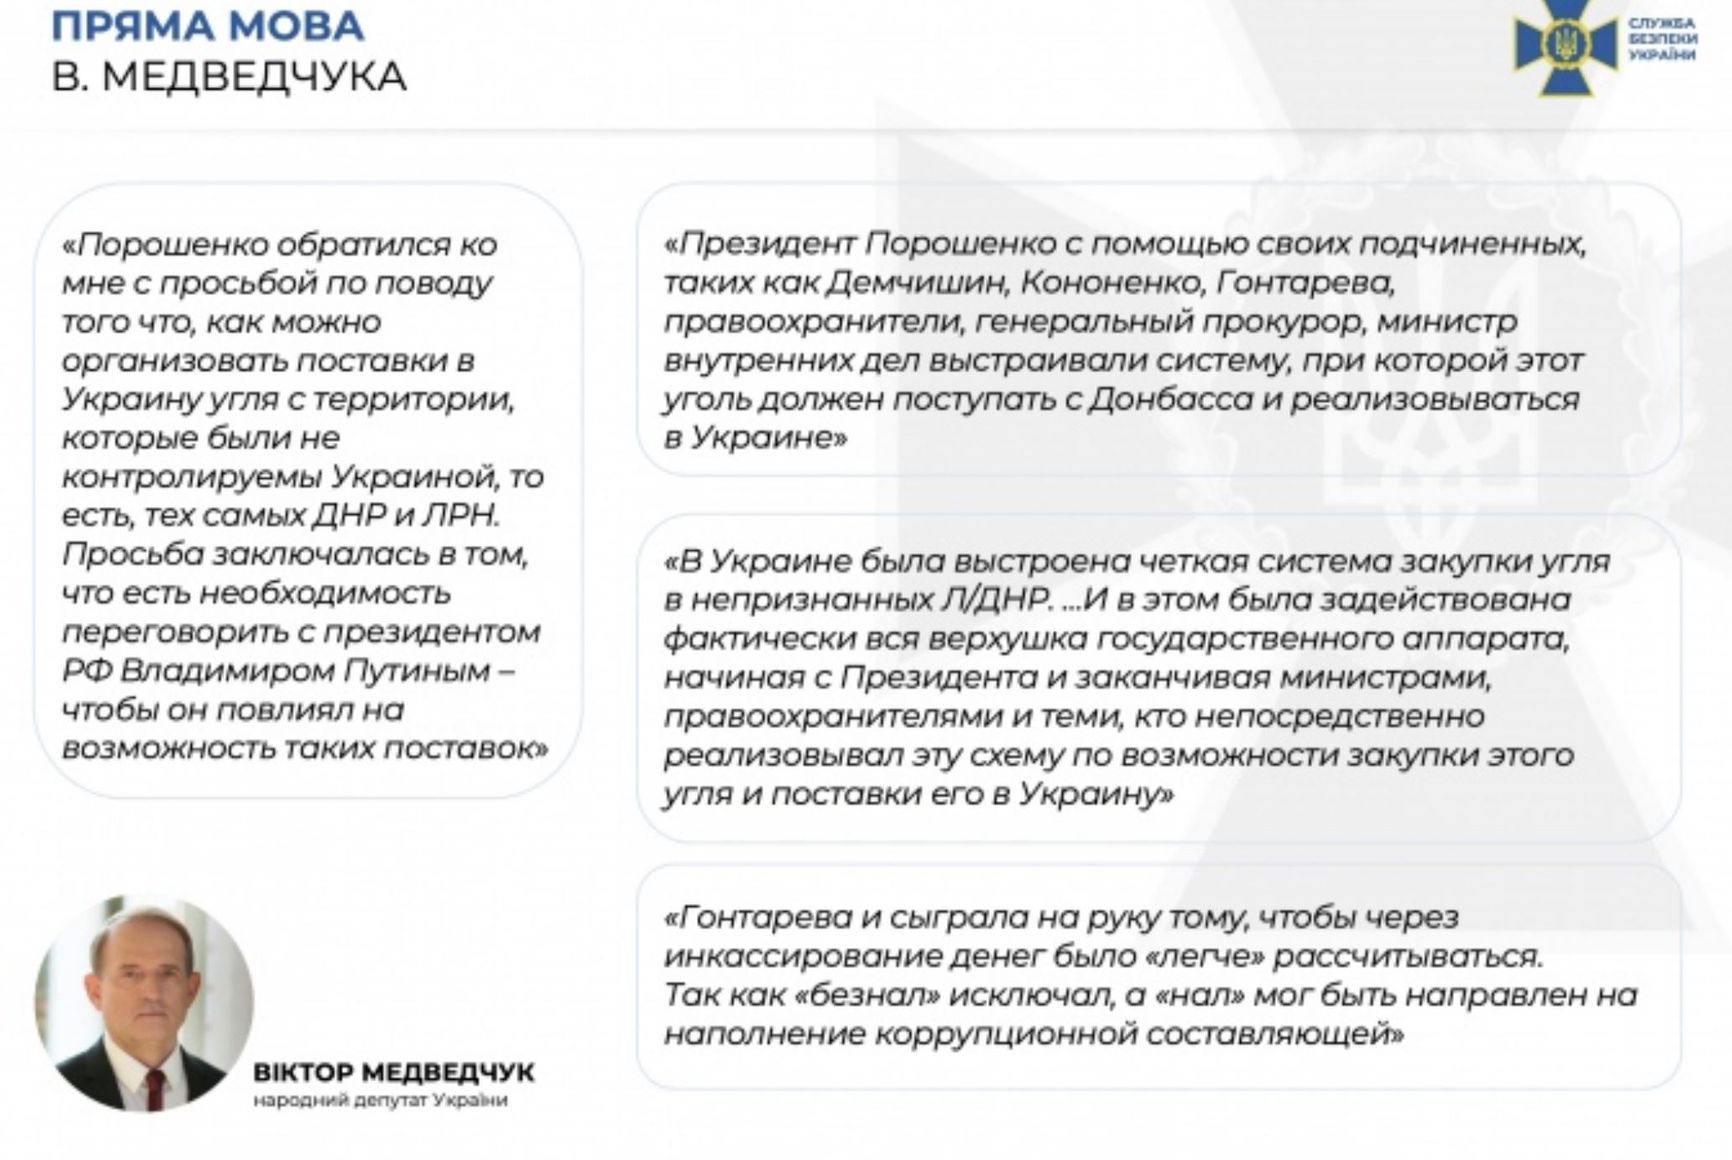 СБУ показала видео, на котором Медведчук дает показания против Порошенко